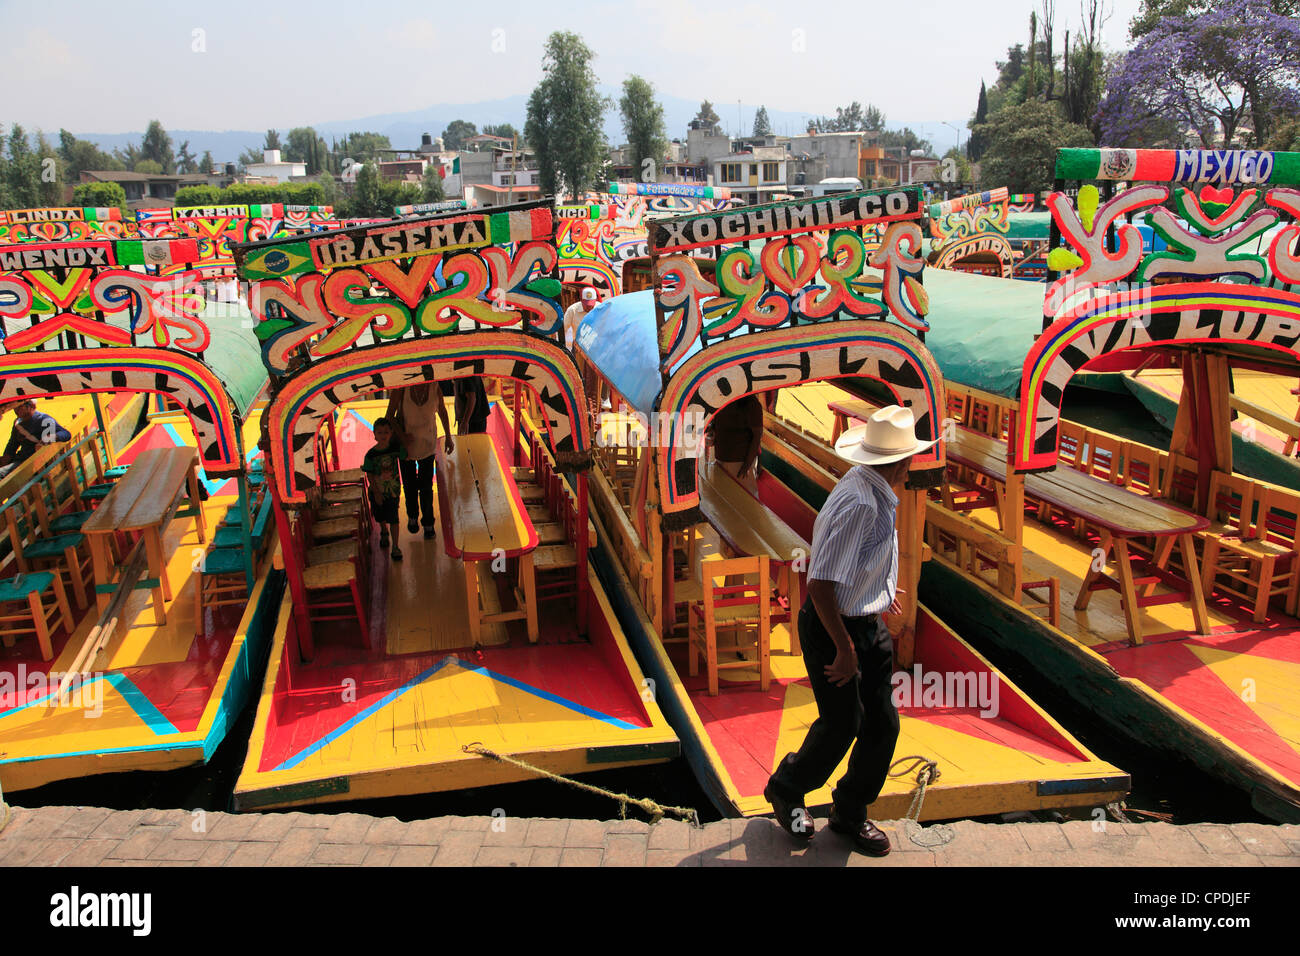 Bateaux, peints de couleurs vives, Xochimilco Trajinera, jardins flottants, les canaux, la ville de Mexico, Mexique, Amérique du Nord Banque D'Images